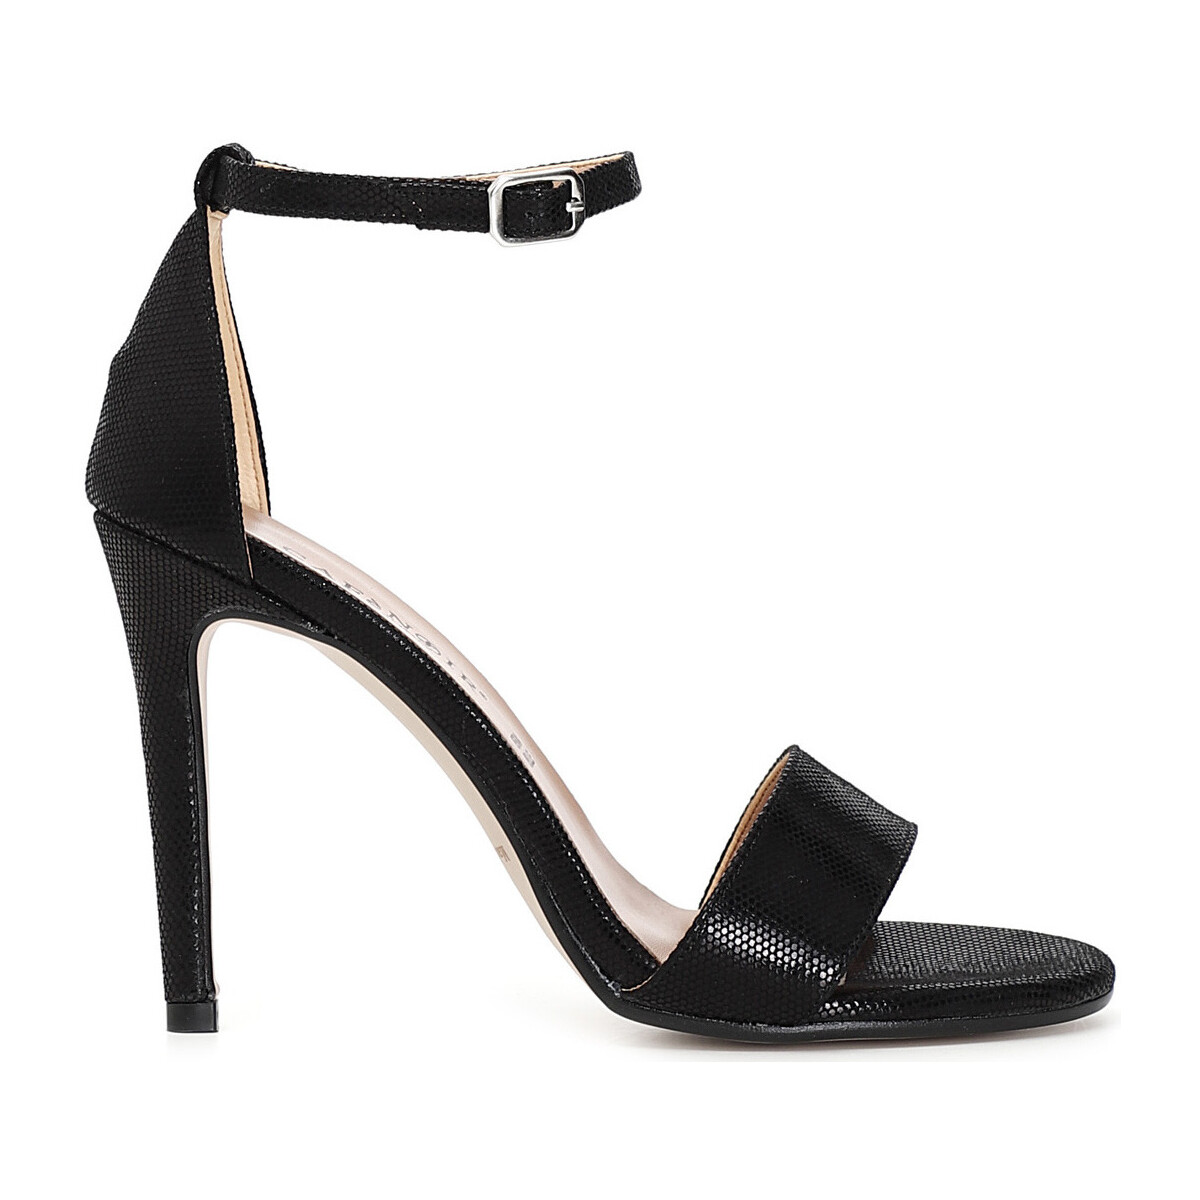 Schoenen Dames Sandalen / Open schoenen Café Noir C1XO9900 Zwart